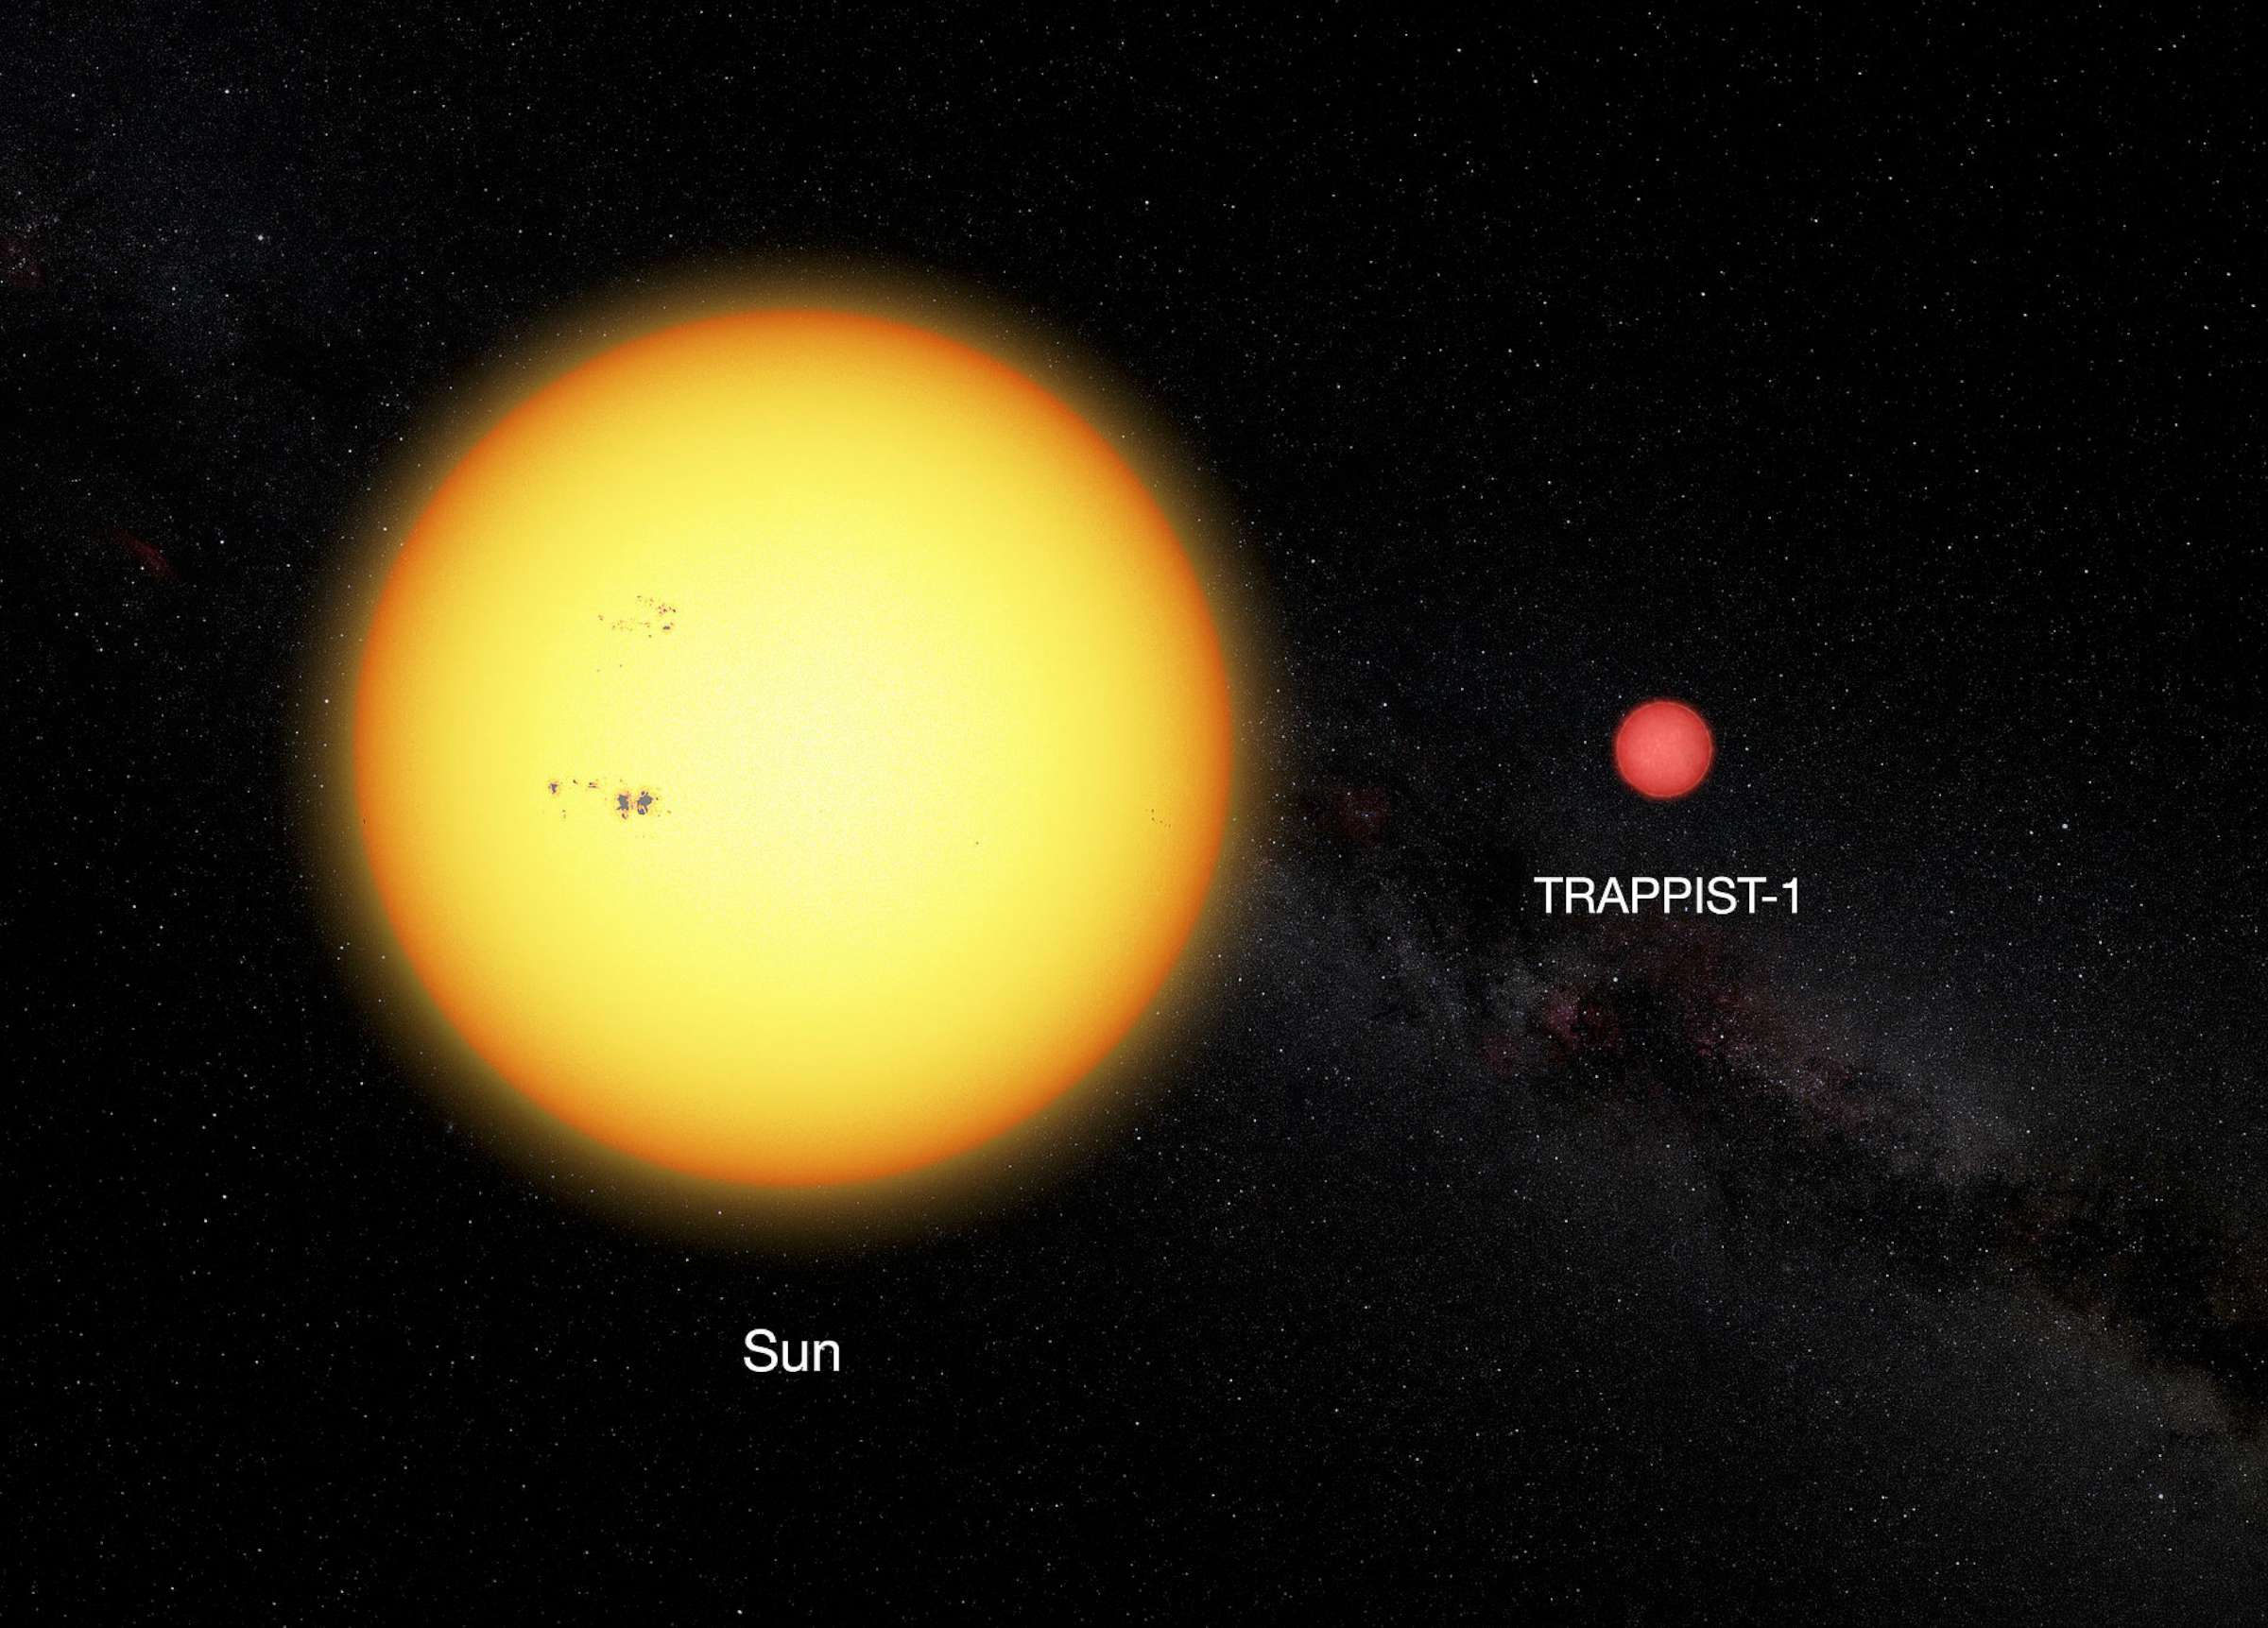 Raudonosios nykštukės TRAPPIST-1 ir Saulės dydžių palyginimas | wikipedia.org nuotr.